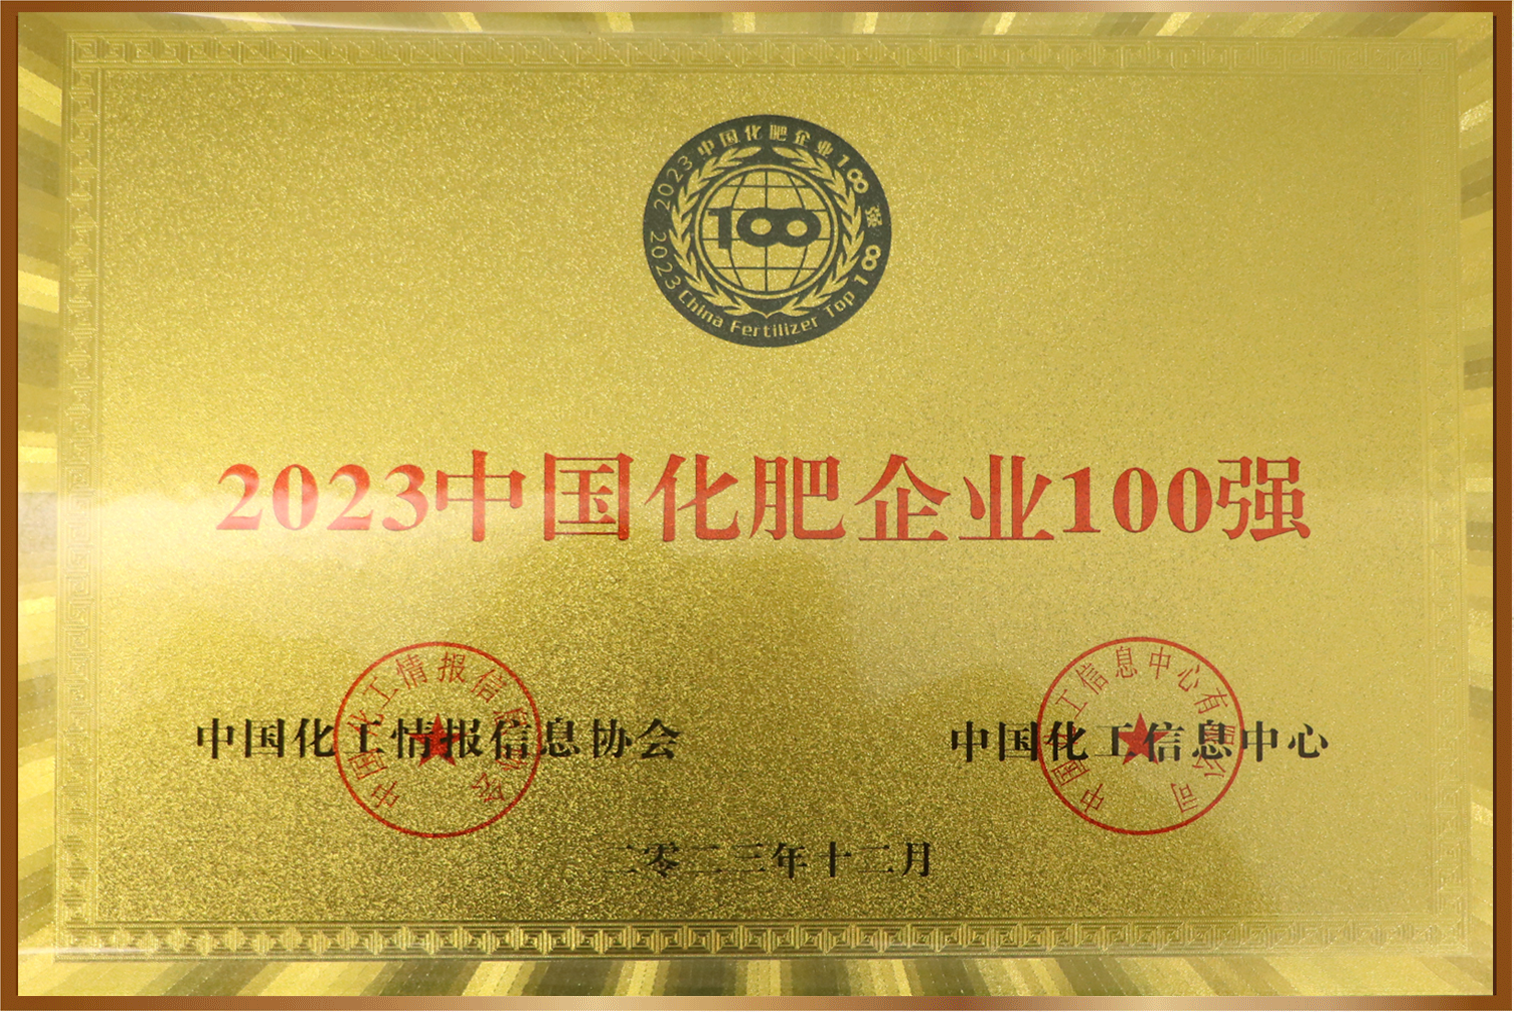 2023中國化肥企業100強